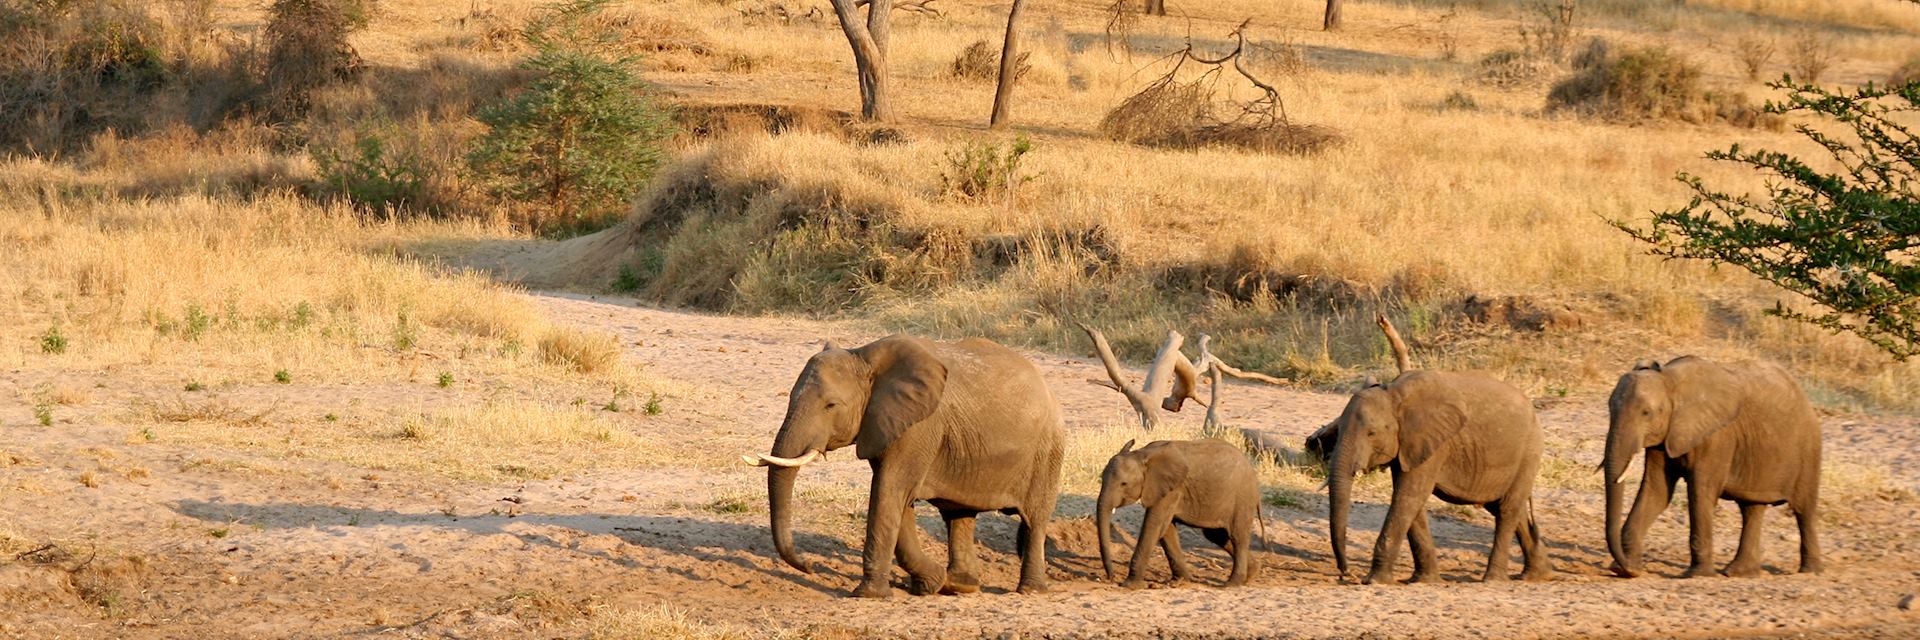 Elephants, Tanzania